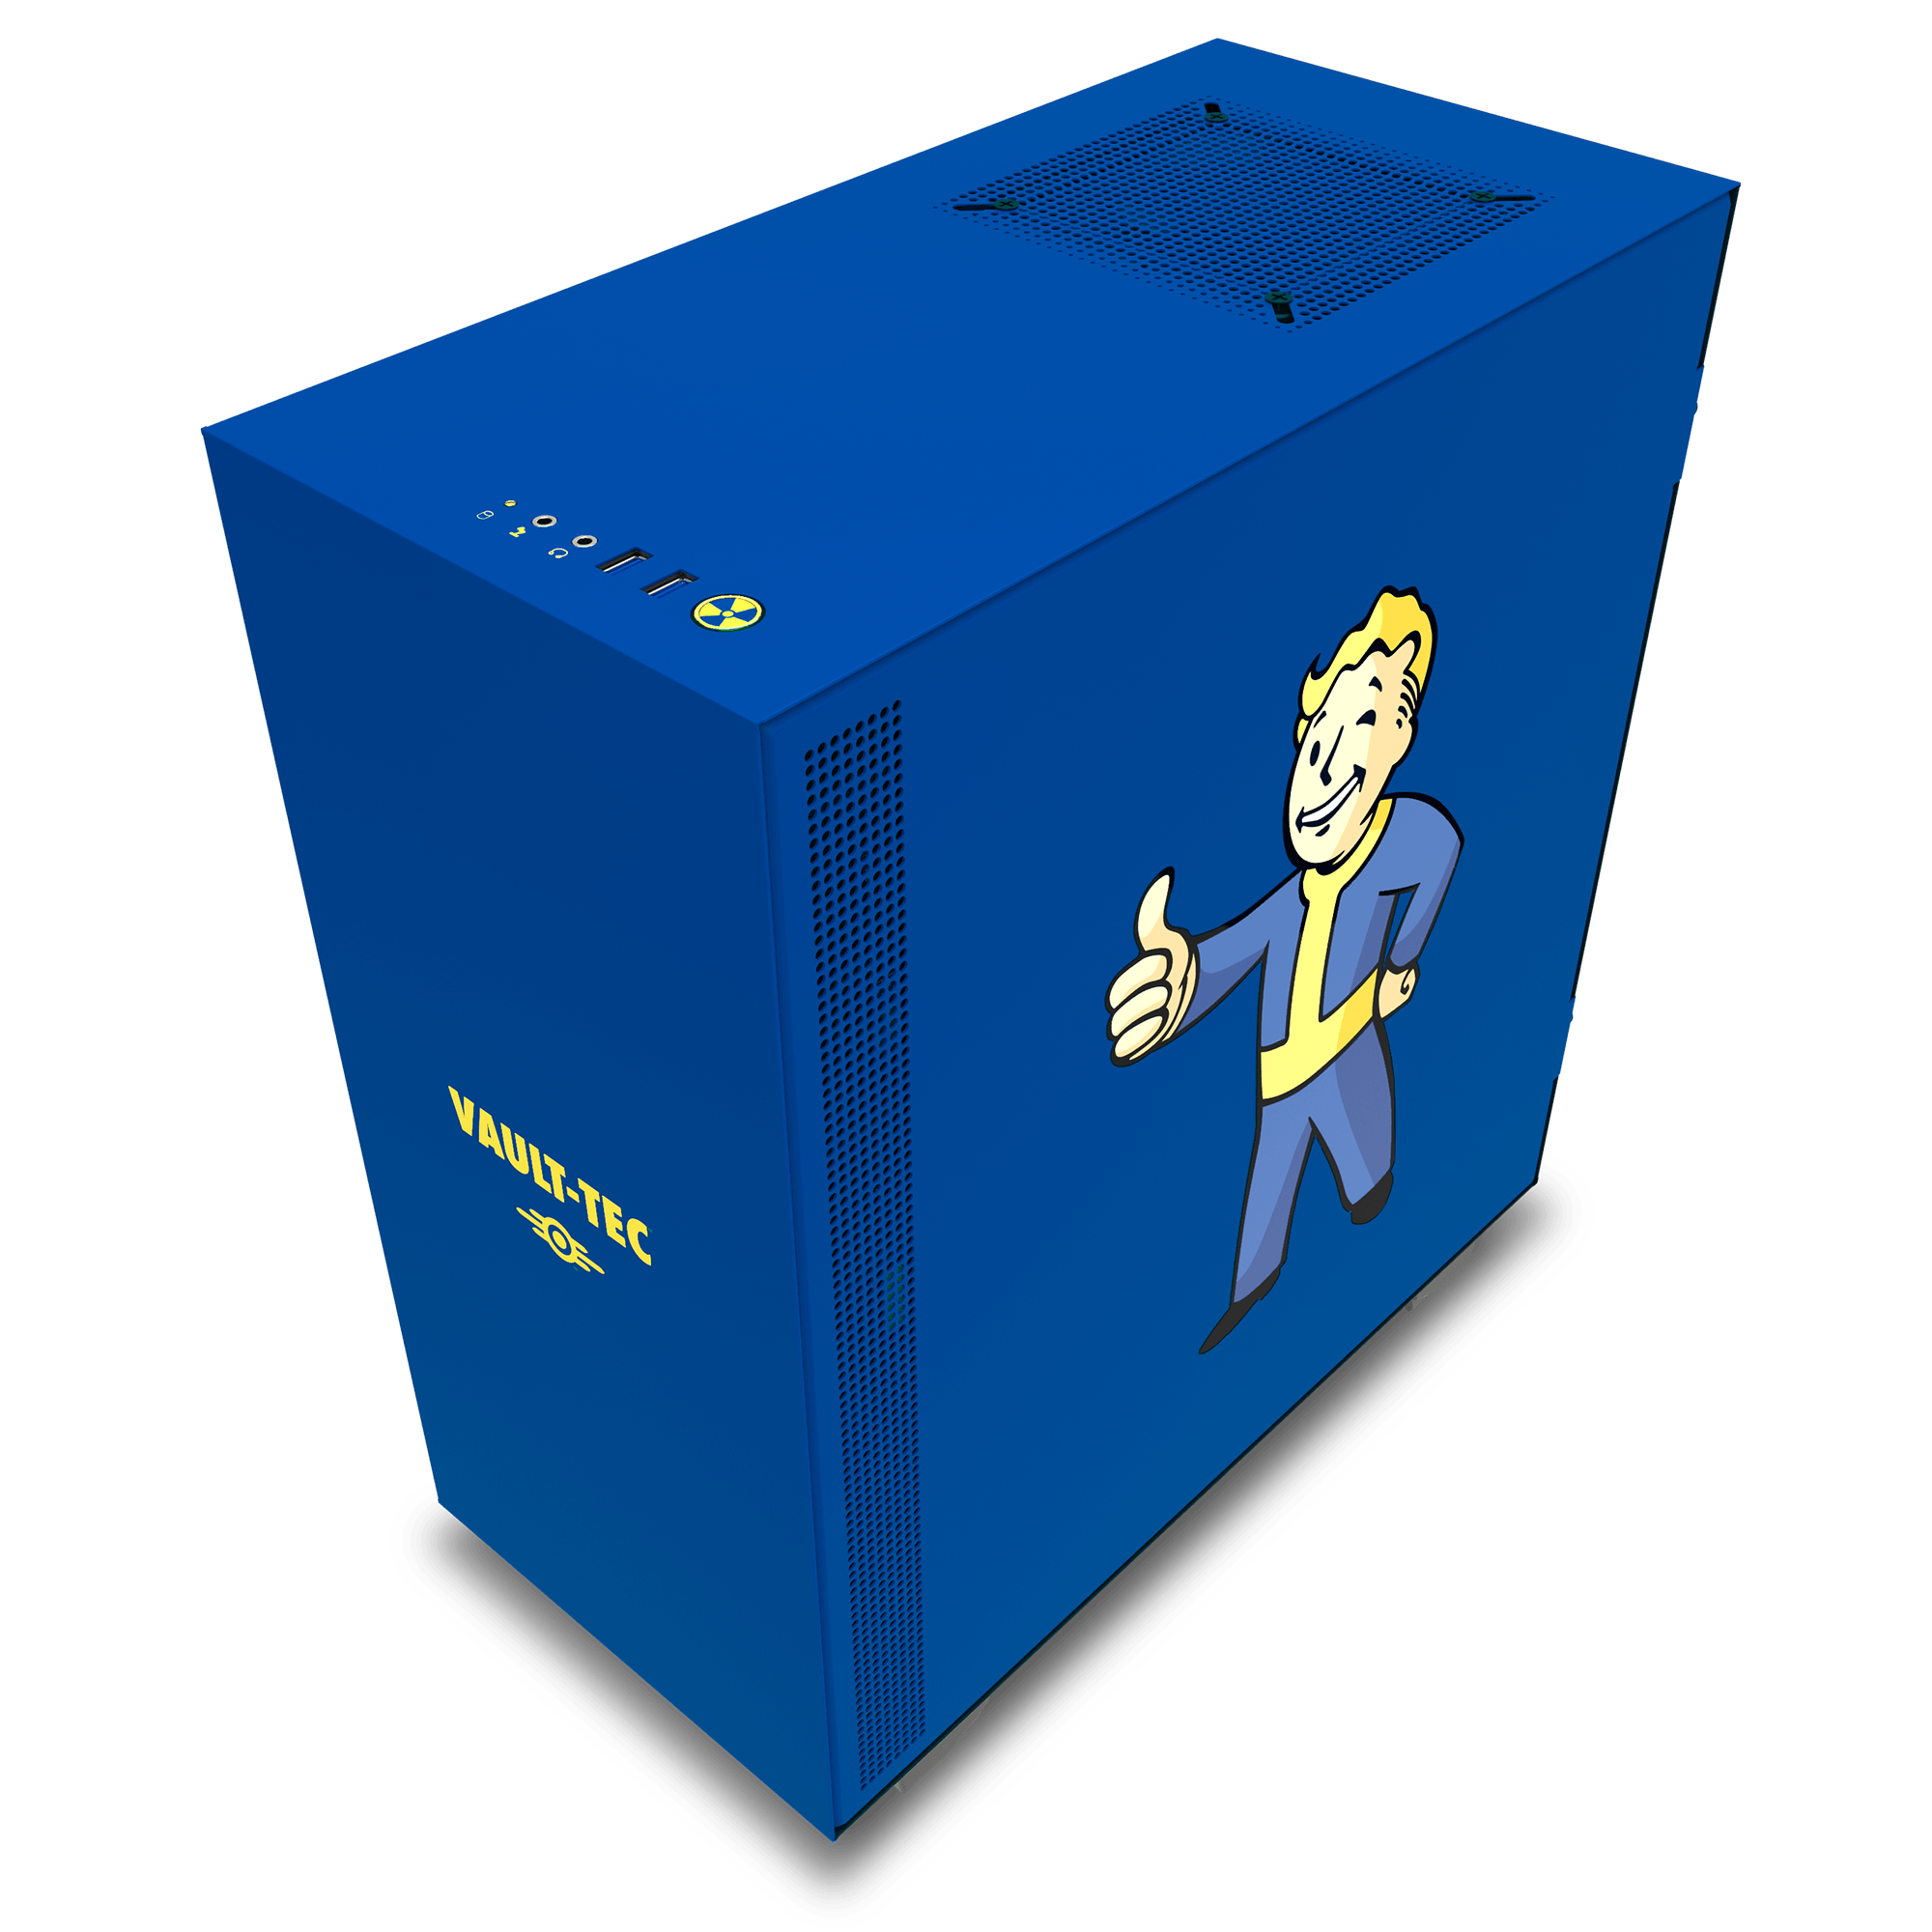 NZXT H500 Vault Boy para fans de Fallout